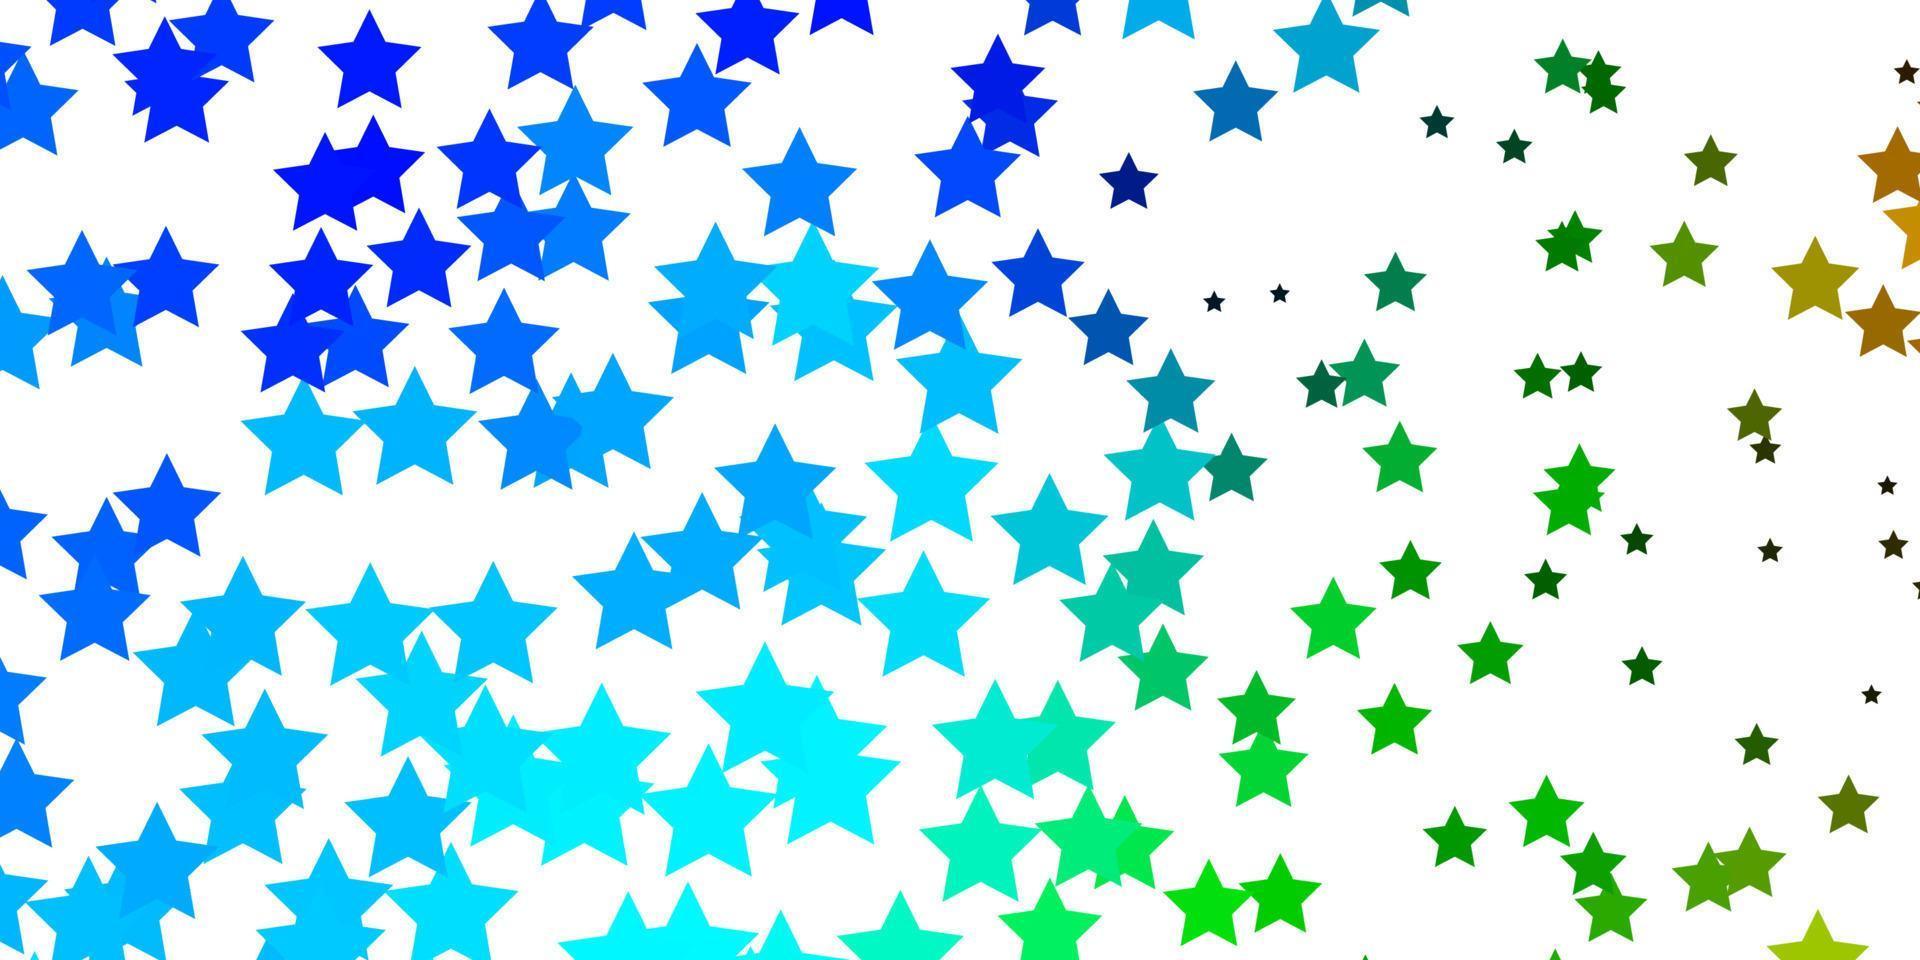 texture de vecteur bleu clair, vert avec de belles étoiles.